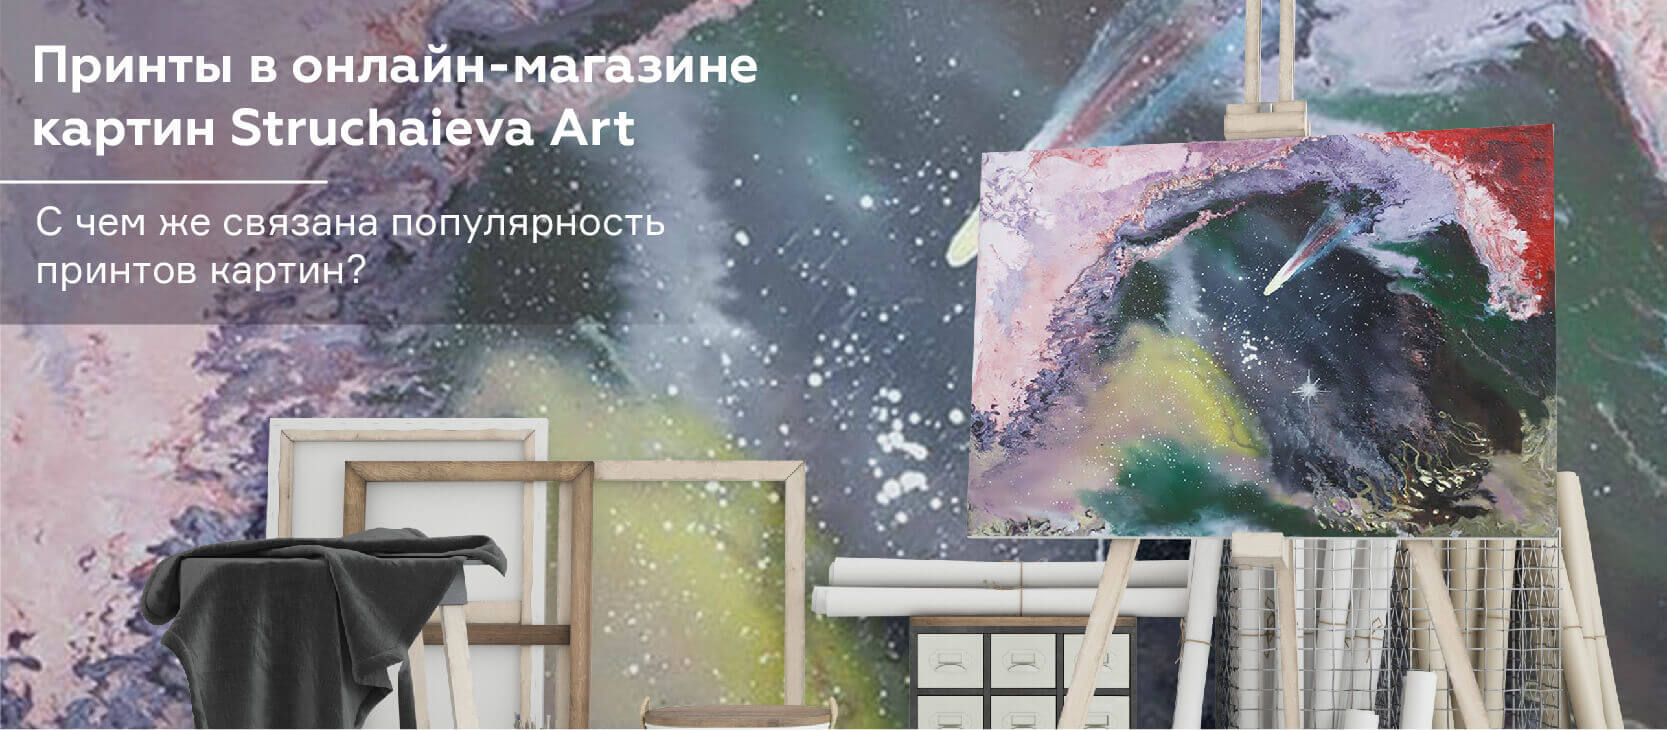 Принти в онлайн-магазині картин Struchaieva Art